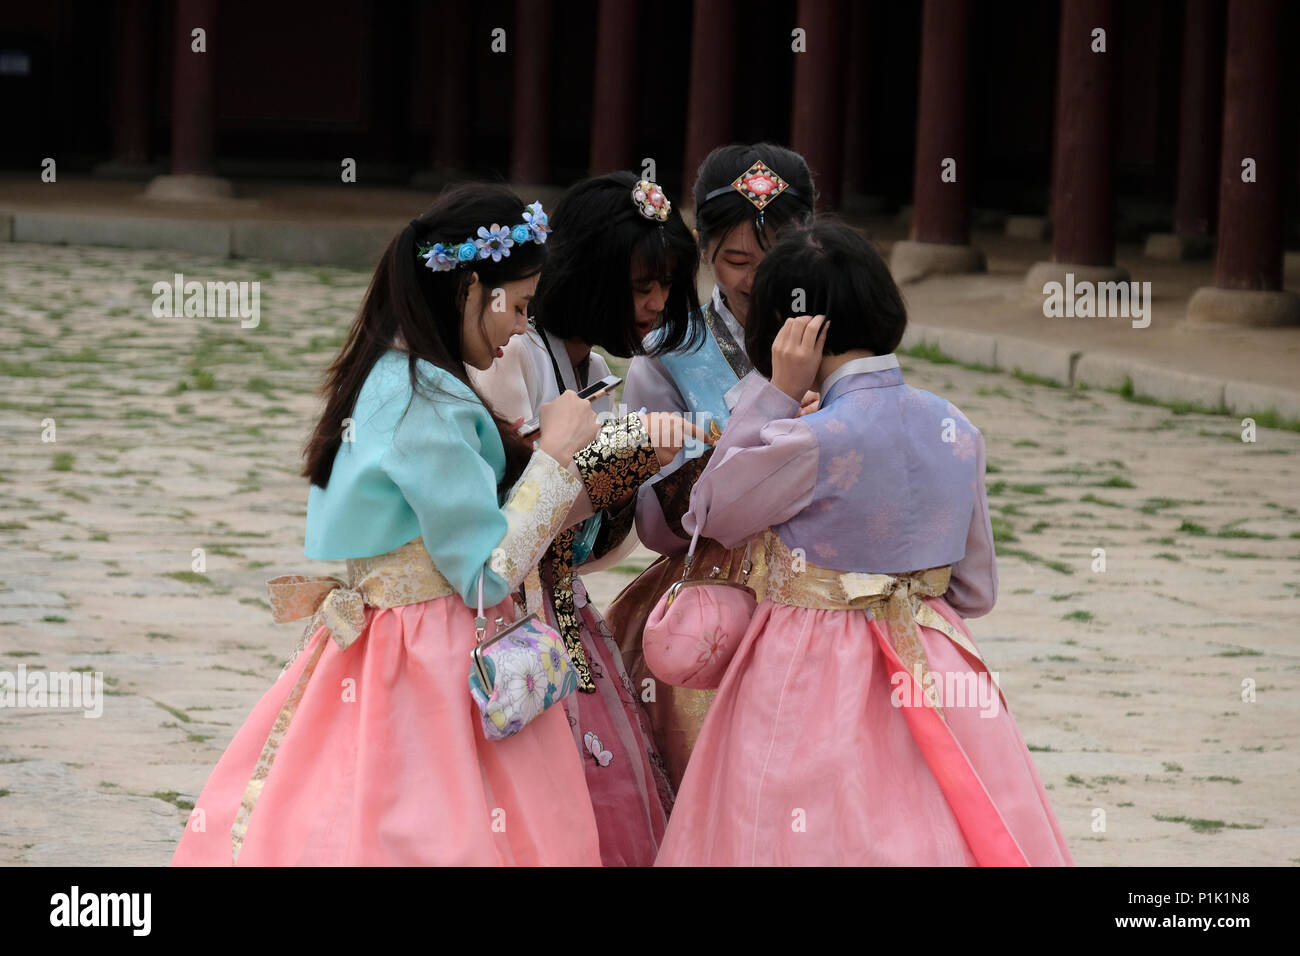 Les jeunes femmes coréennes en costumes traditionnels en utilisant leur téléphone cellulaire à Gyeongbokgung ou le Palais de Gyeongbok qui était le principal palais royal de la dynastie Joseon. Construit en 1395 dans la ville de Séoul, capitale de la Corée du Sud Banque D'Images